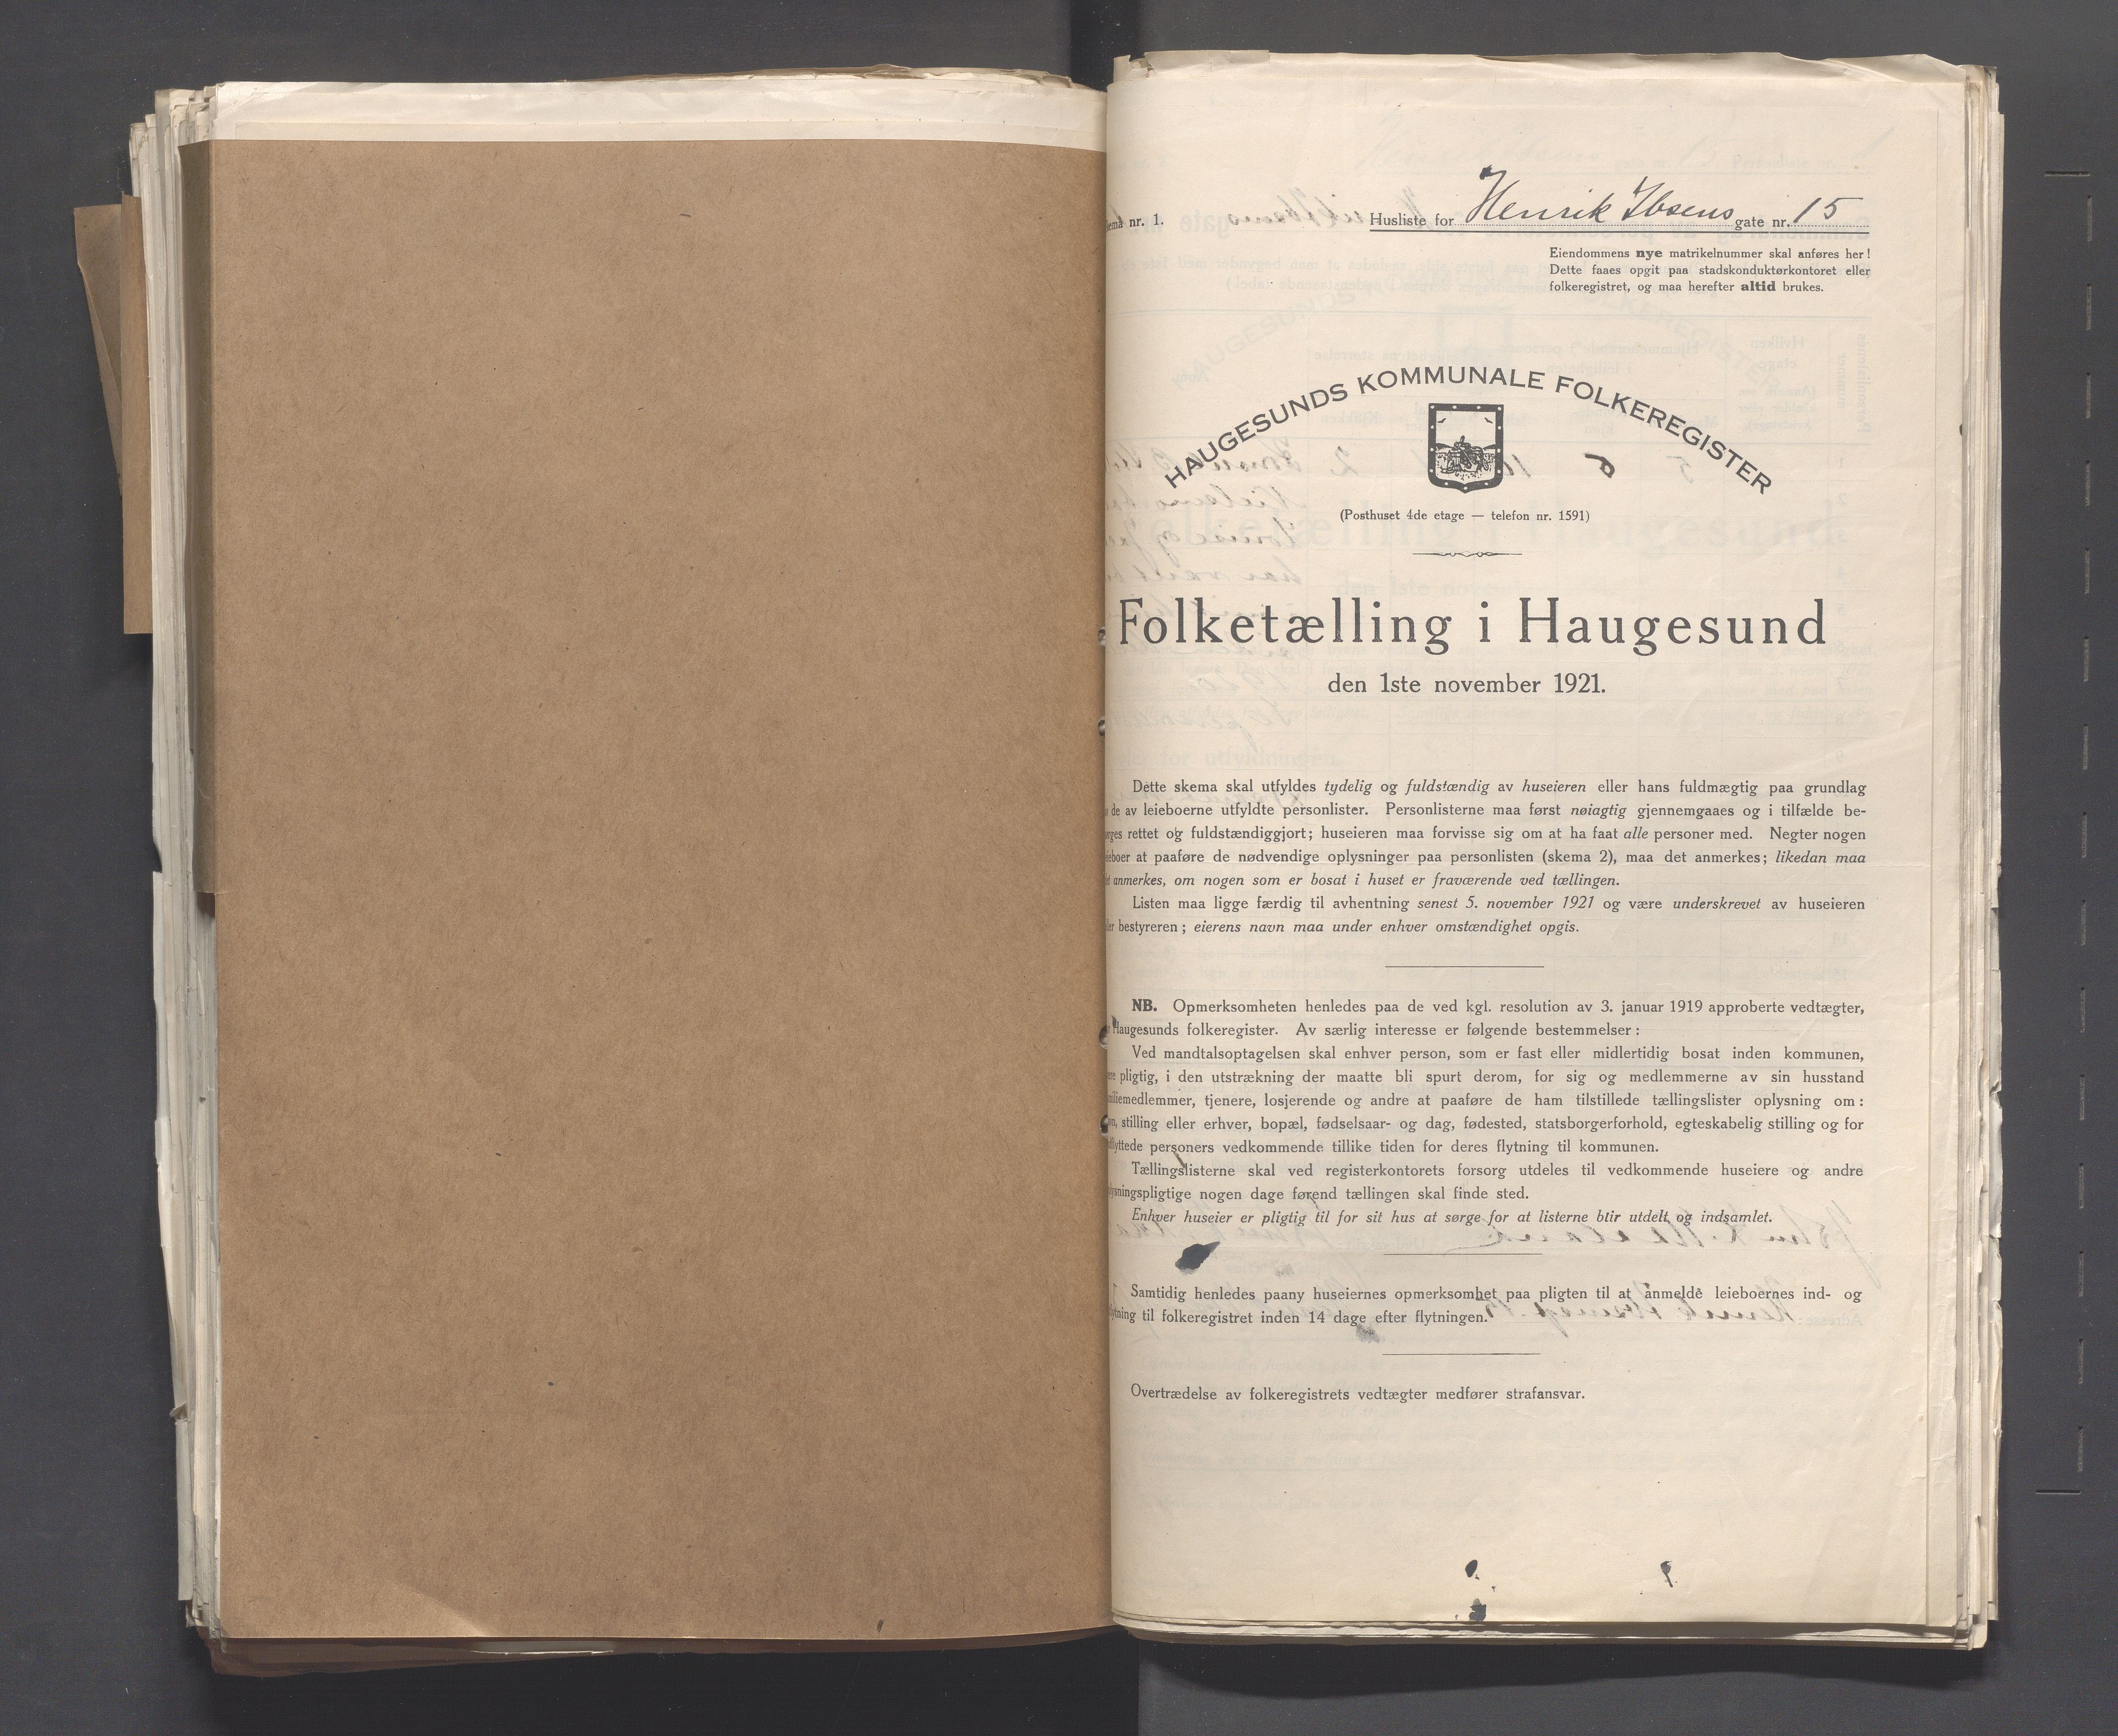 IKAR, Local census 1.11.1921 for Haugesund, 1921, p. 2179